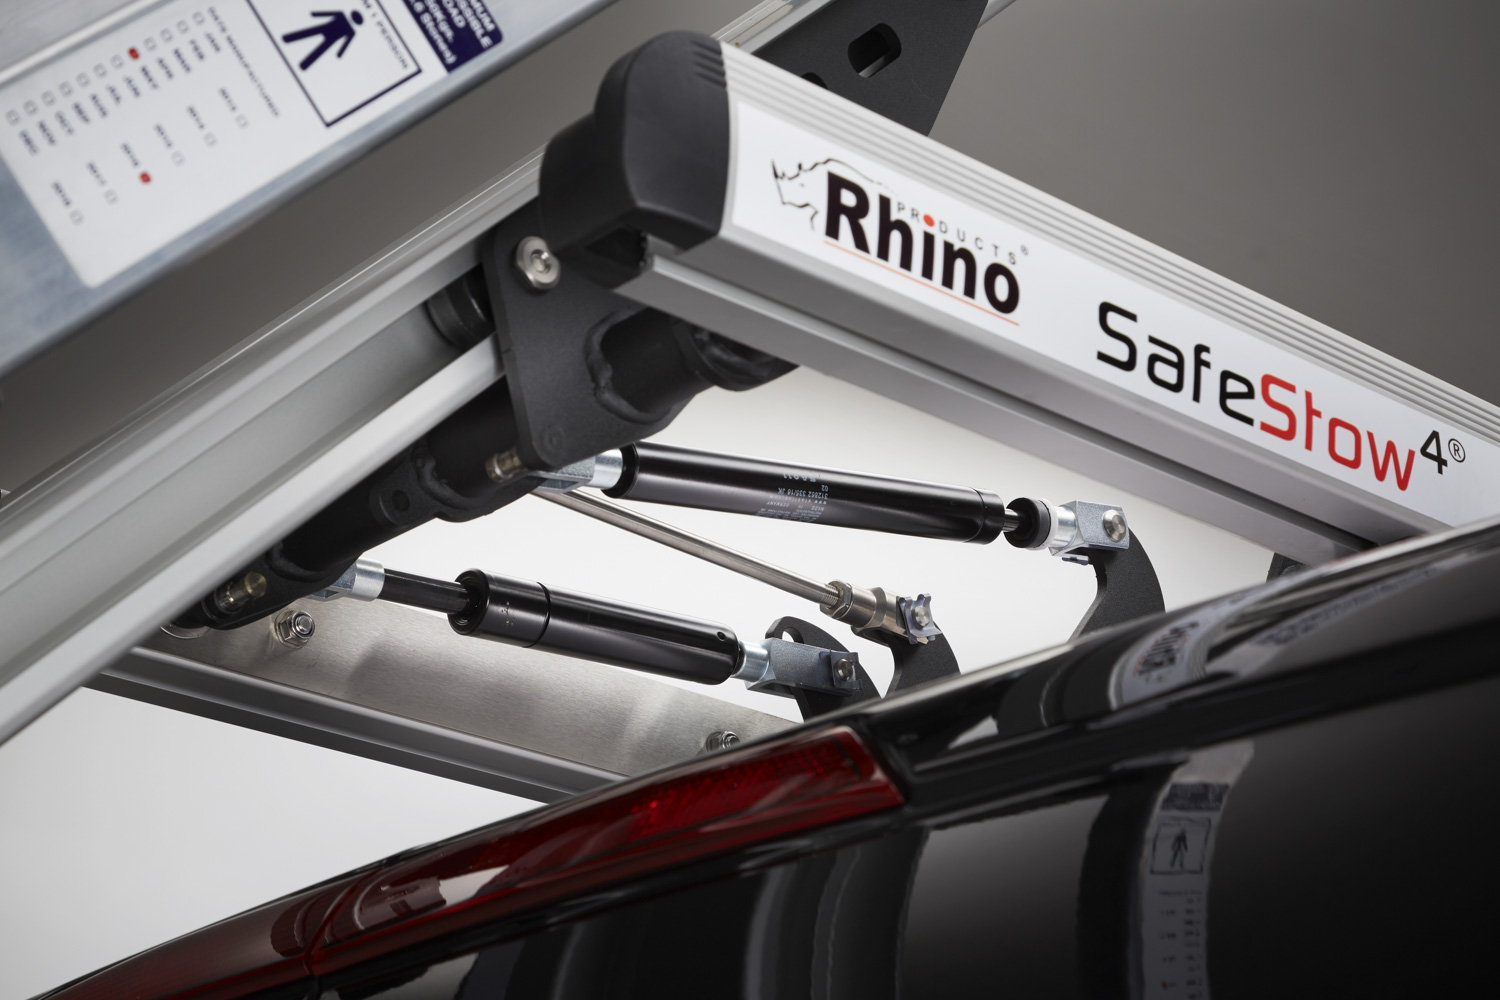 Rhino SafeStow4 Leitersicherung für zwei Leitern